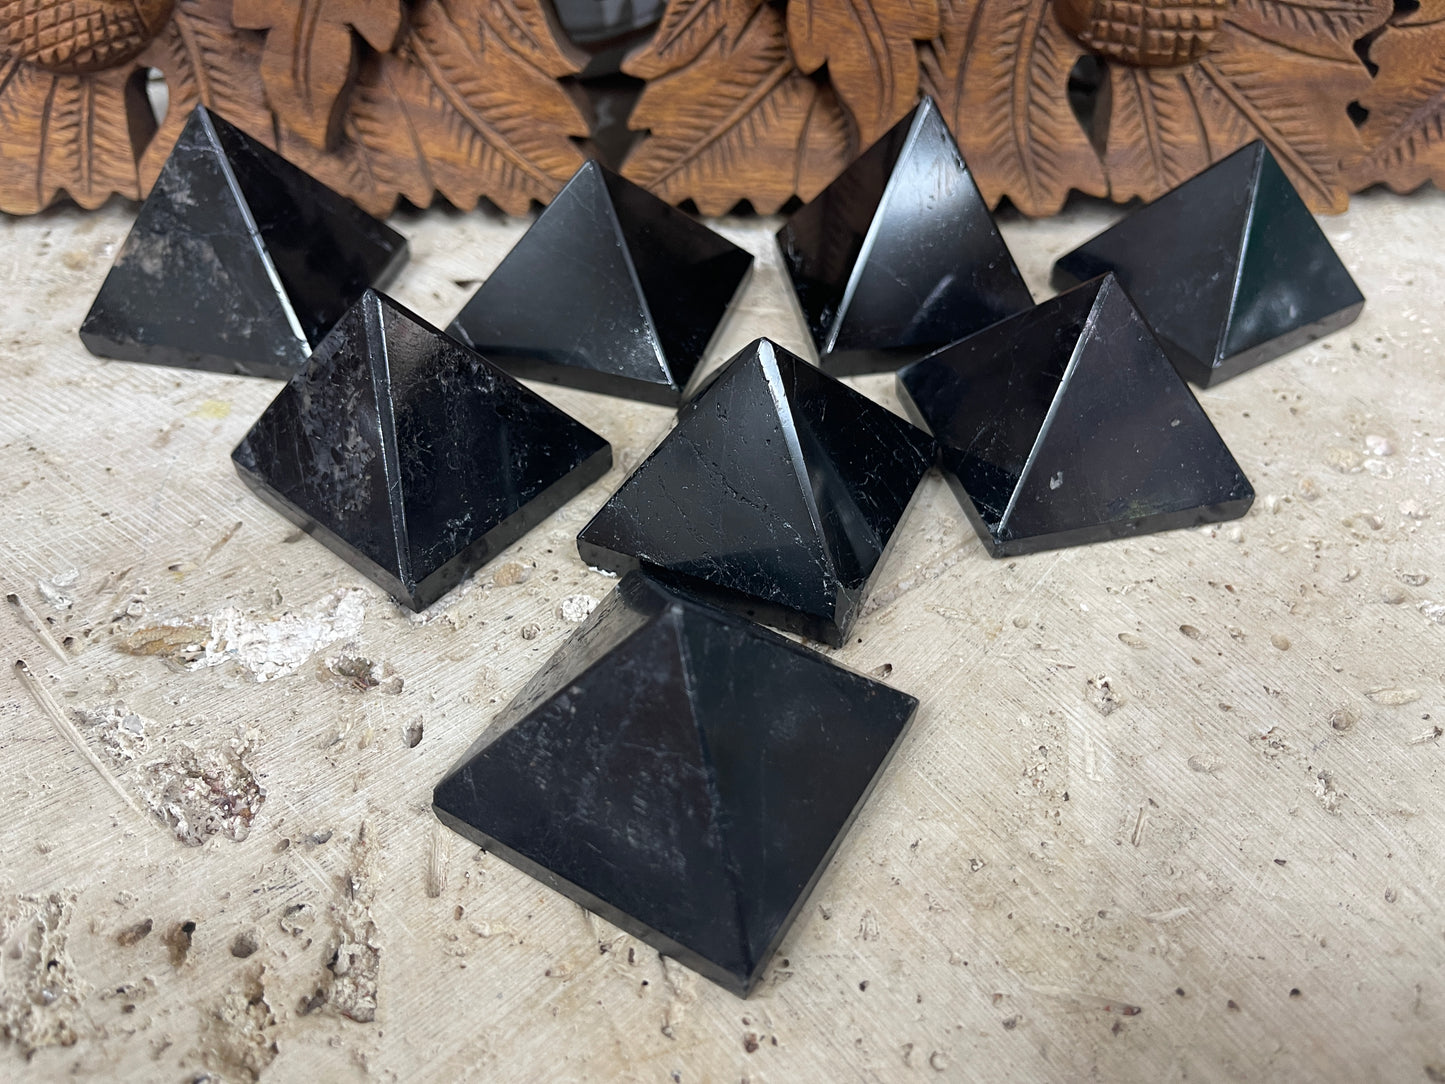 Black Tourmaline Pyramids